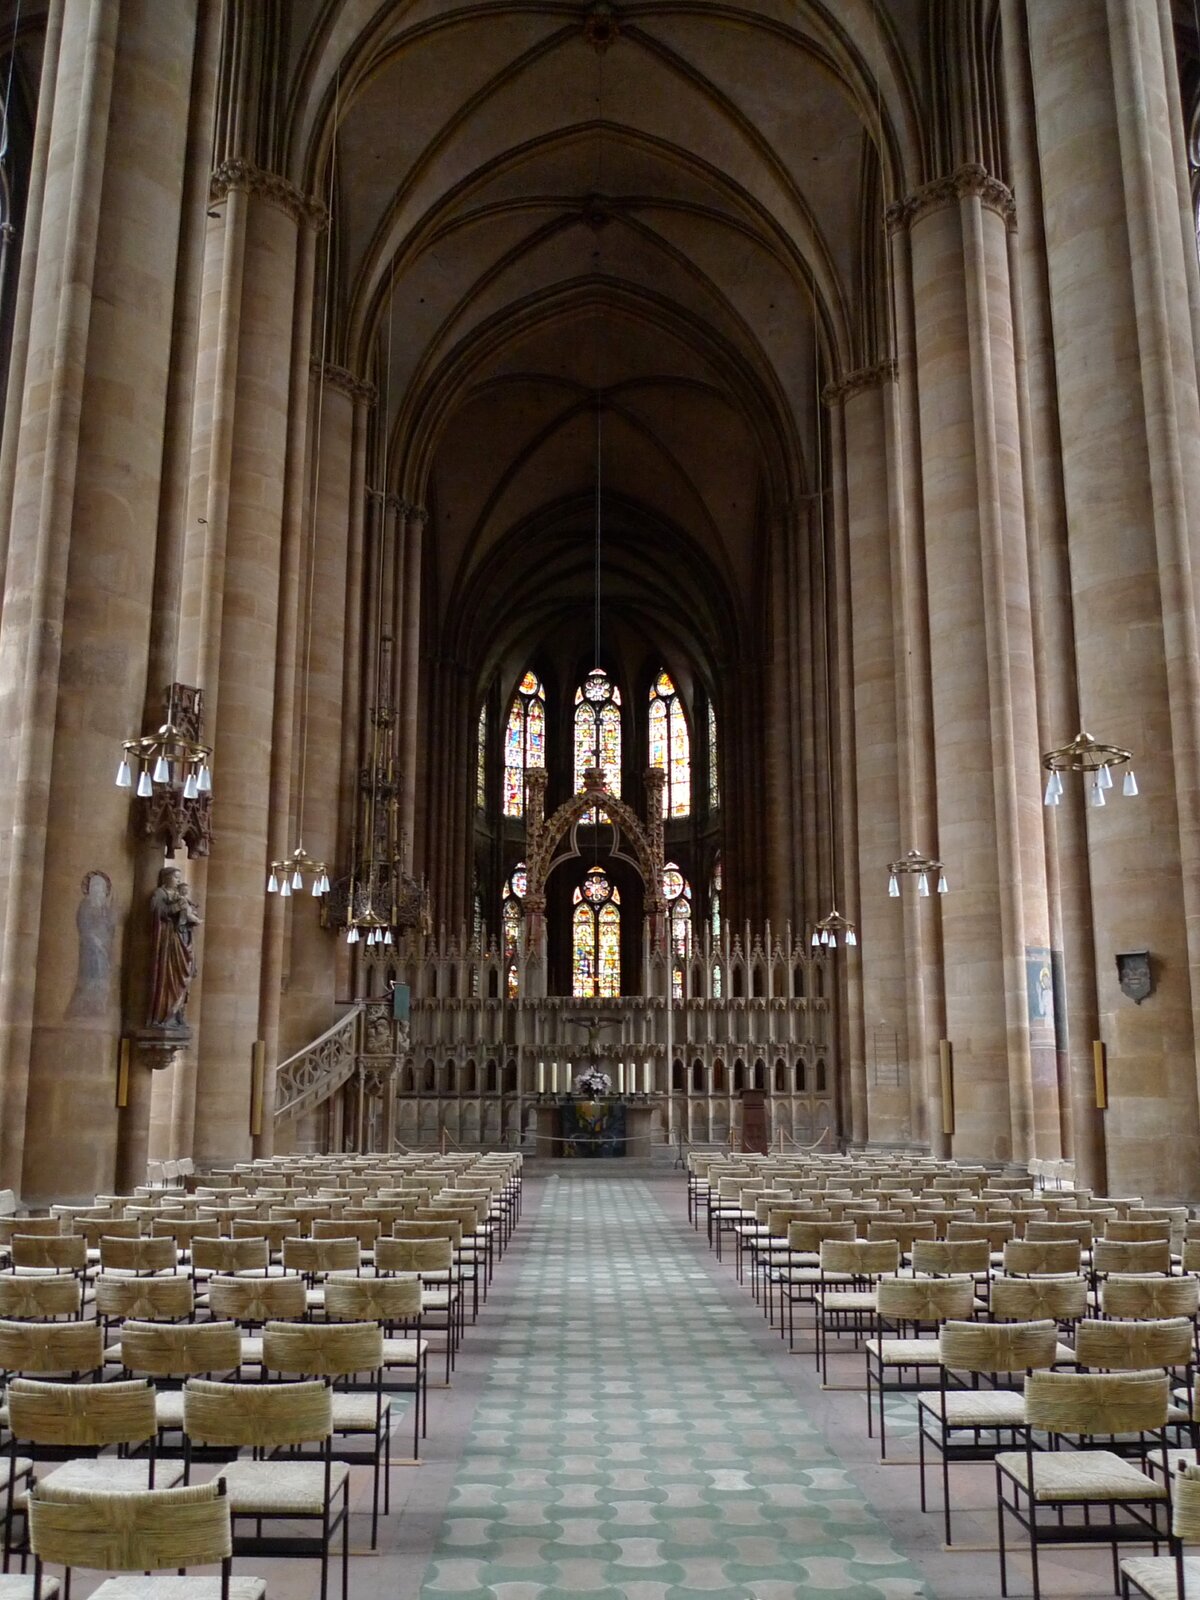 Fotografia przedstawia wnętrze Kościoła św. Elżbiety (niem. Elisabethkirche) w Marburgu w Niemczech. Ukazuje wnętrze z nawą główną, sklepioną krzyżowo. Po bokach masywne filary oddzielające nawy. W tle widok na apsydę. 